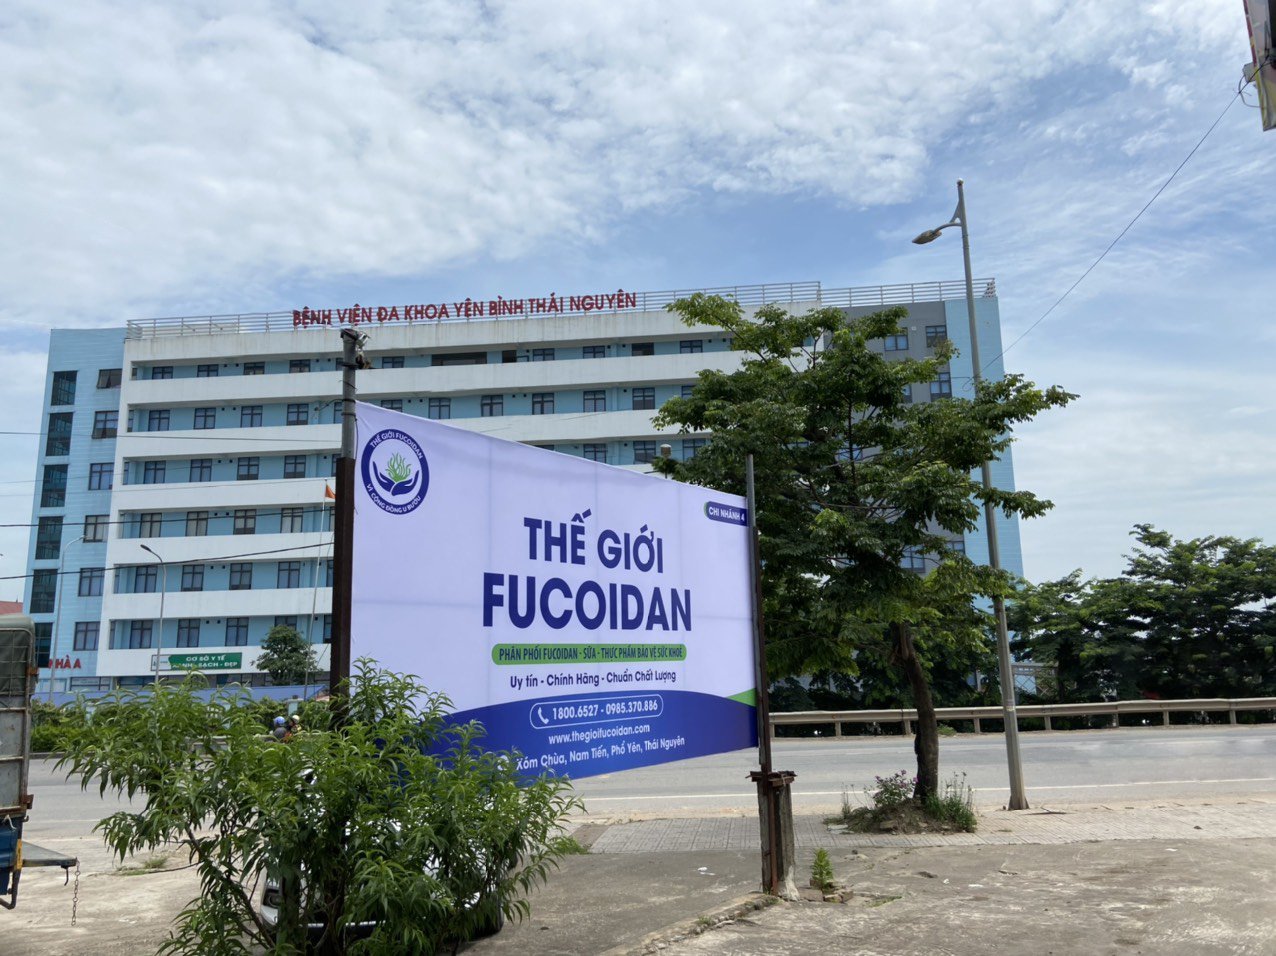 Chi nhánh 4 Thế Giới Fucoidan - Đối diện Bệnh viện đa khoa Yên Bình Thái Nguyên